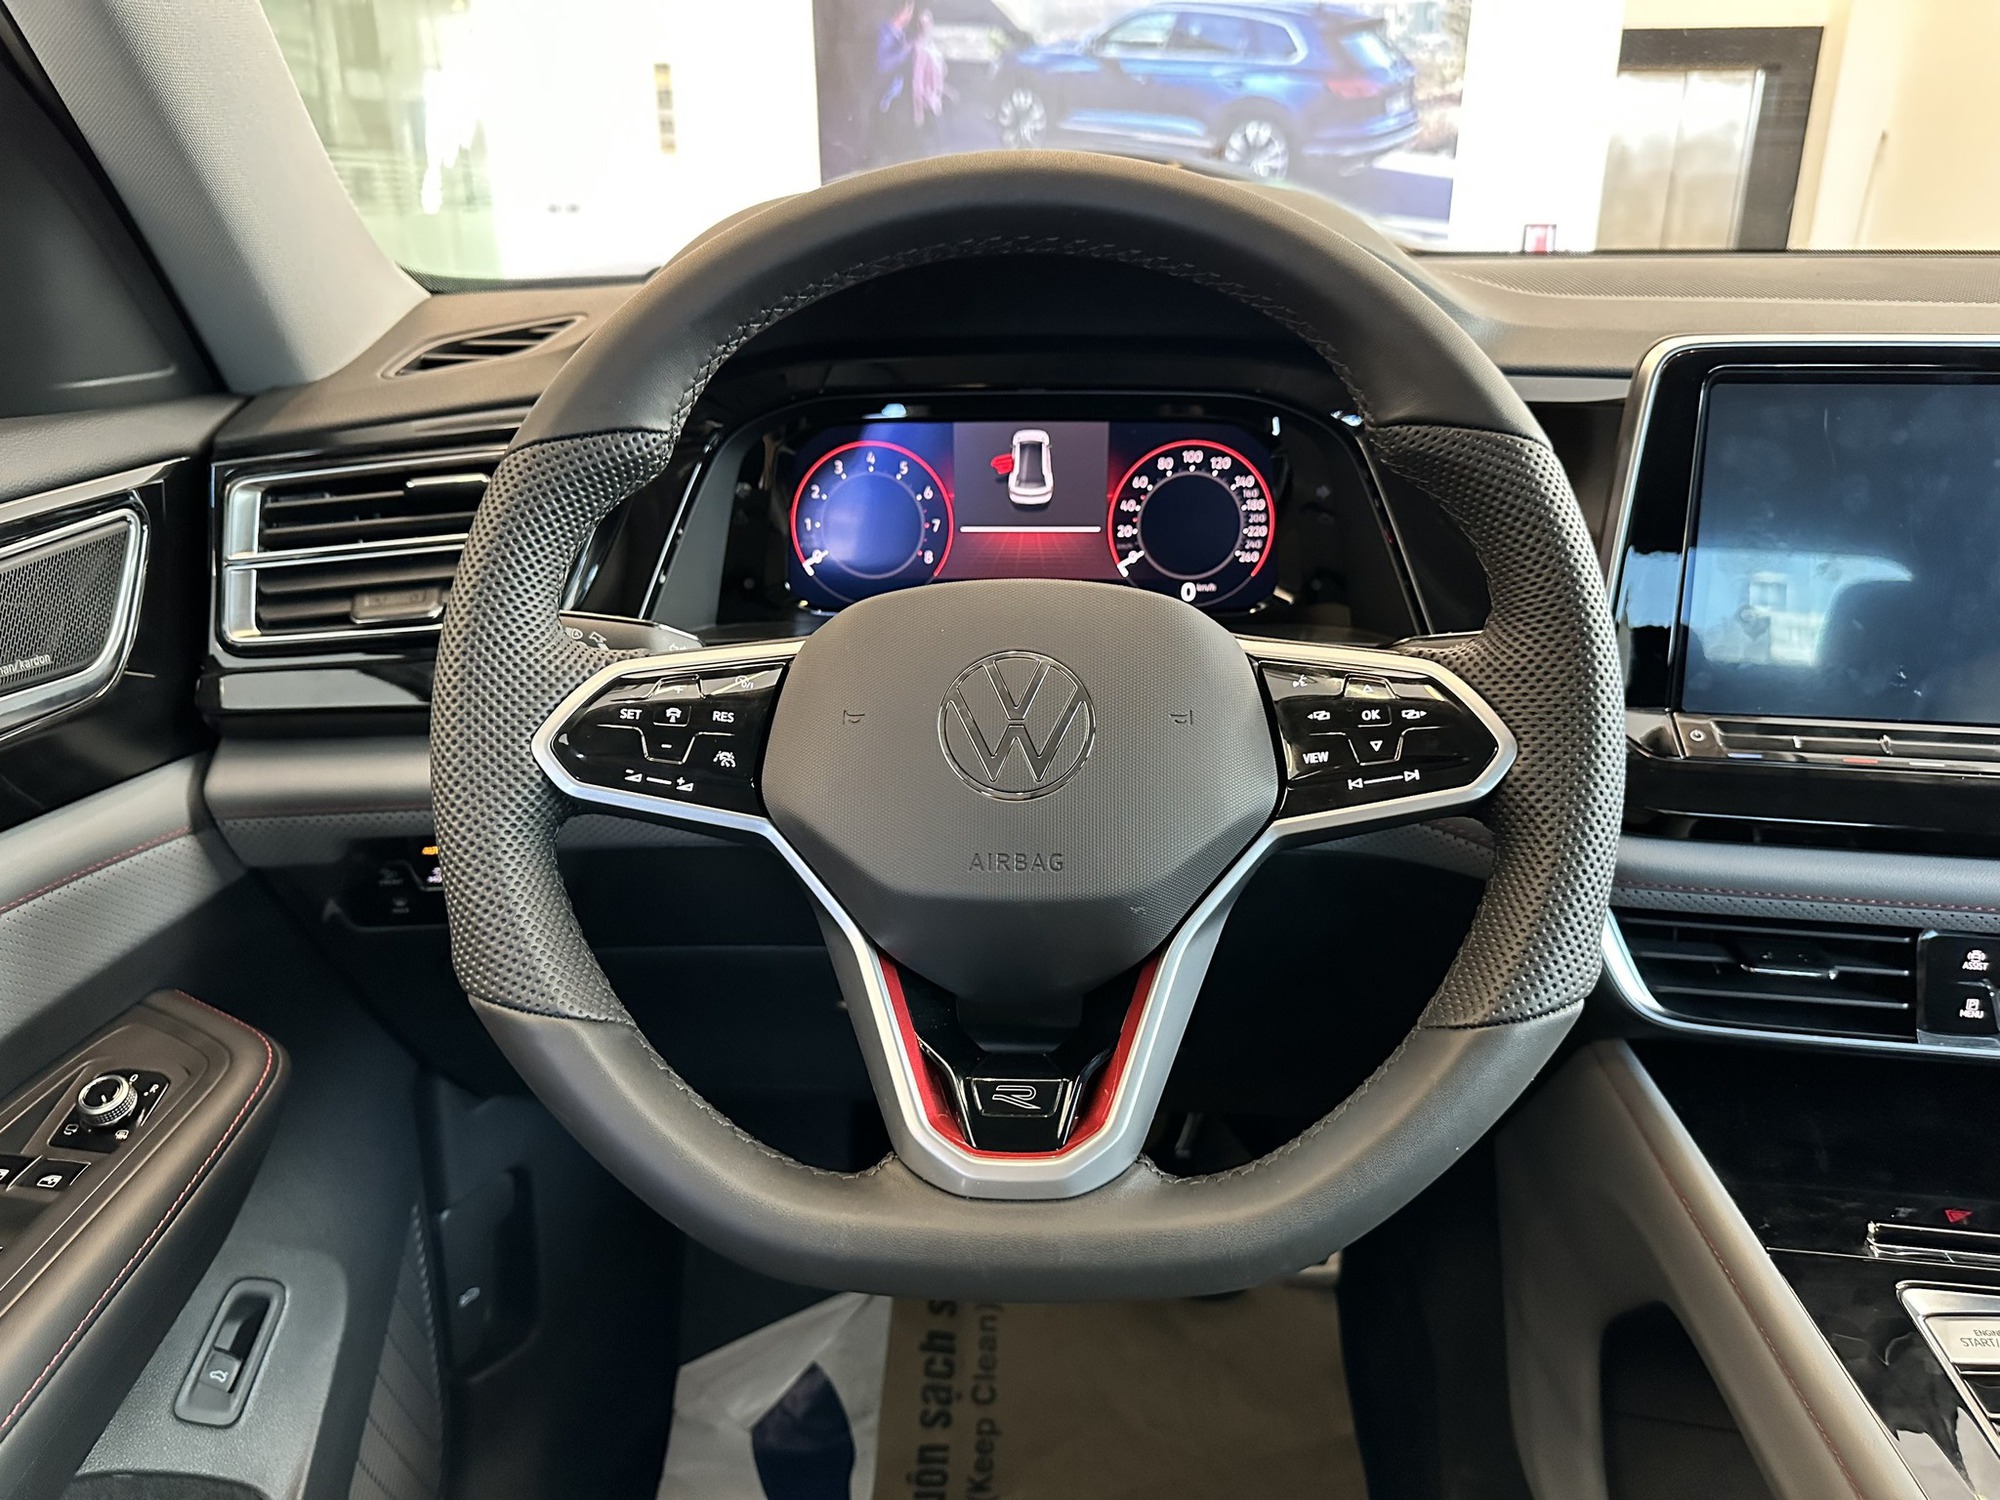 Ảnh chi tiết VW Teramont X tại đại lý: Giá dự kiến 2,168 tỷ, giao xe trước Tết, nhân tố mới cùng tầm Palisade và Explorer